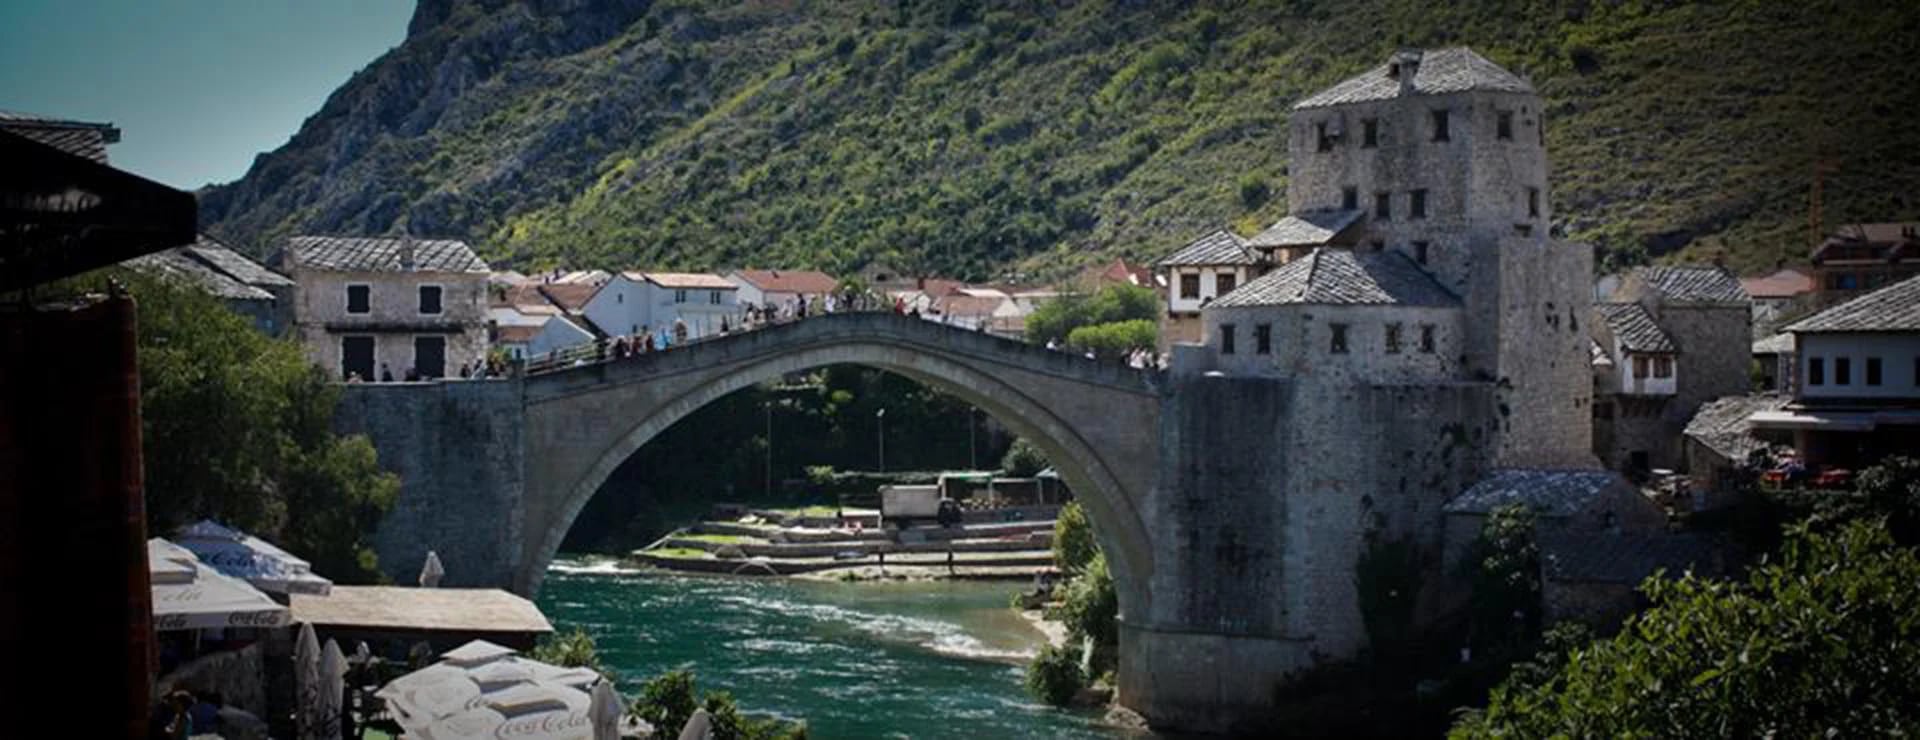 El mítico punte de Mostar (Ignacio Ezequiel Hutin)